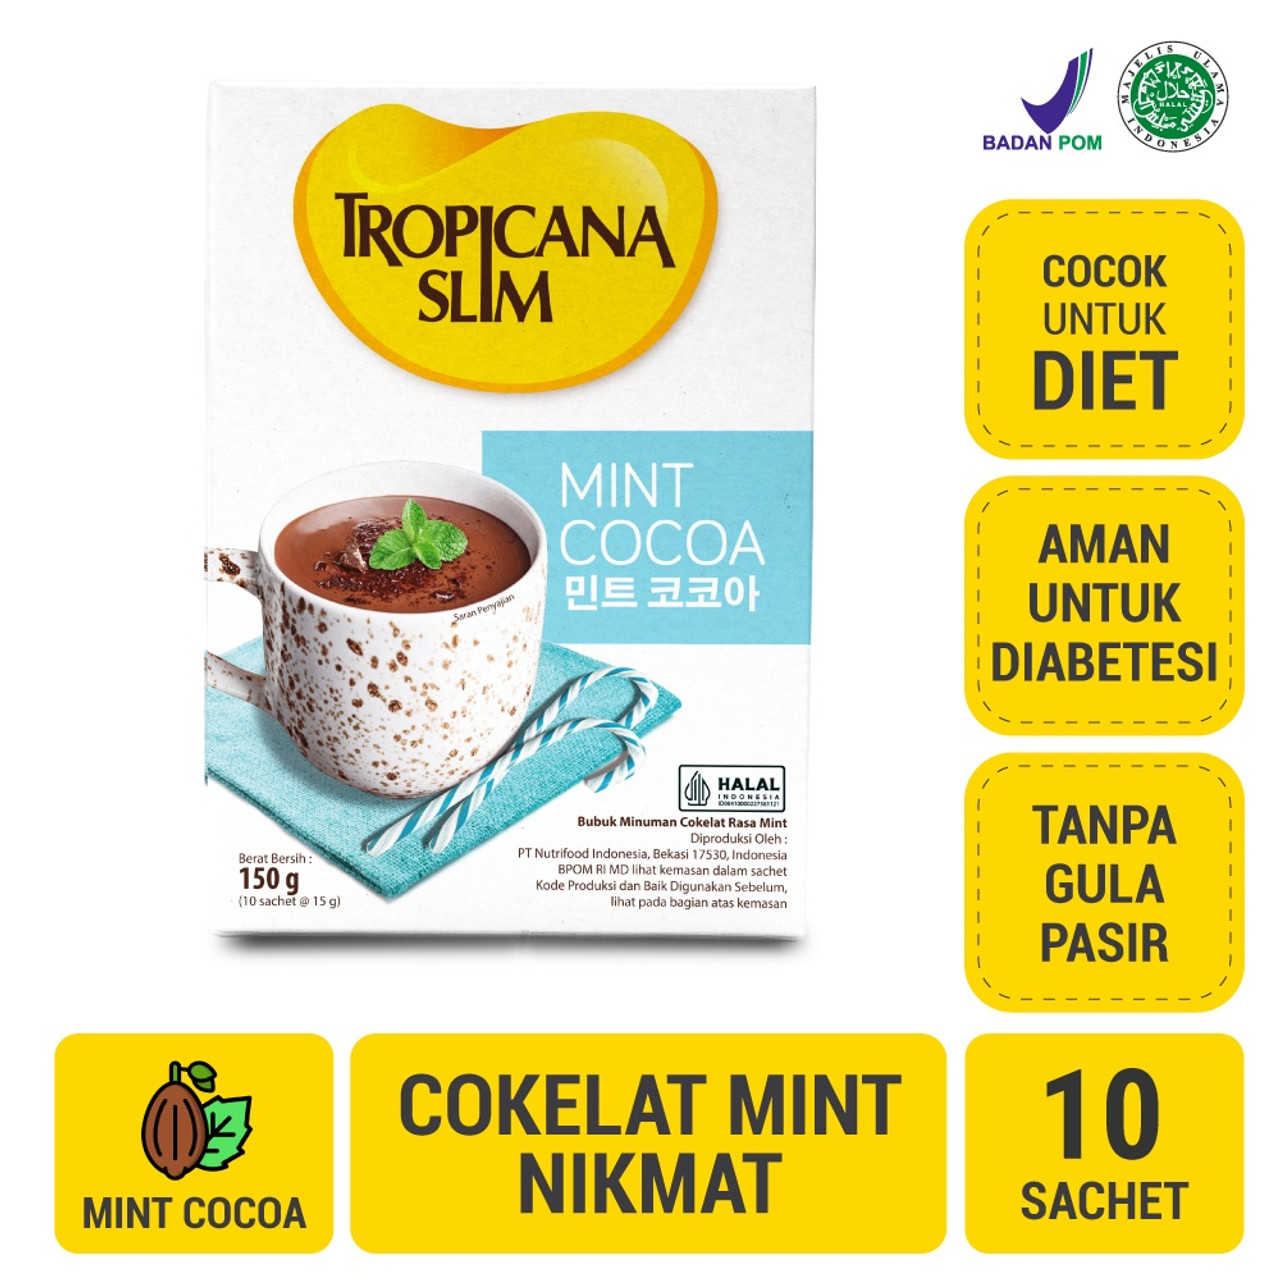 Tropicana Slim Mint Cocoa, 60 gram